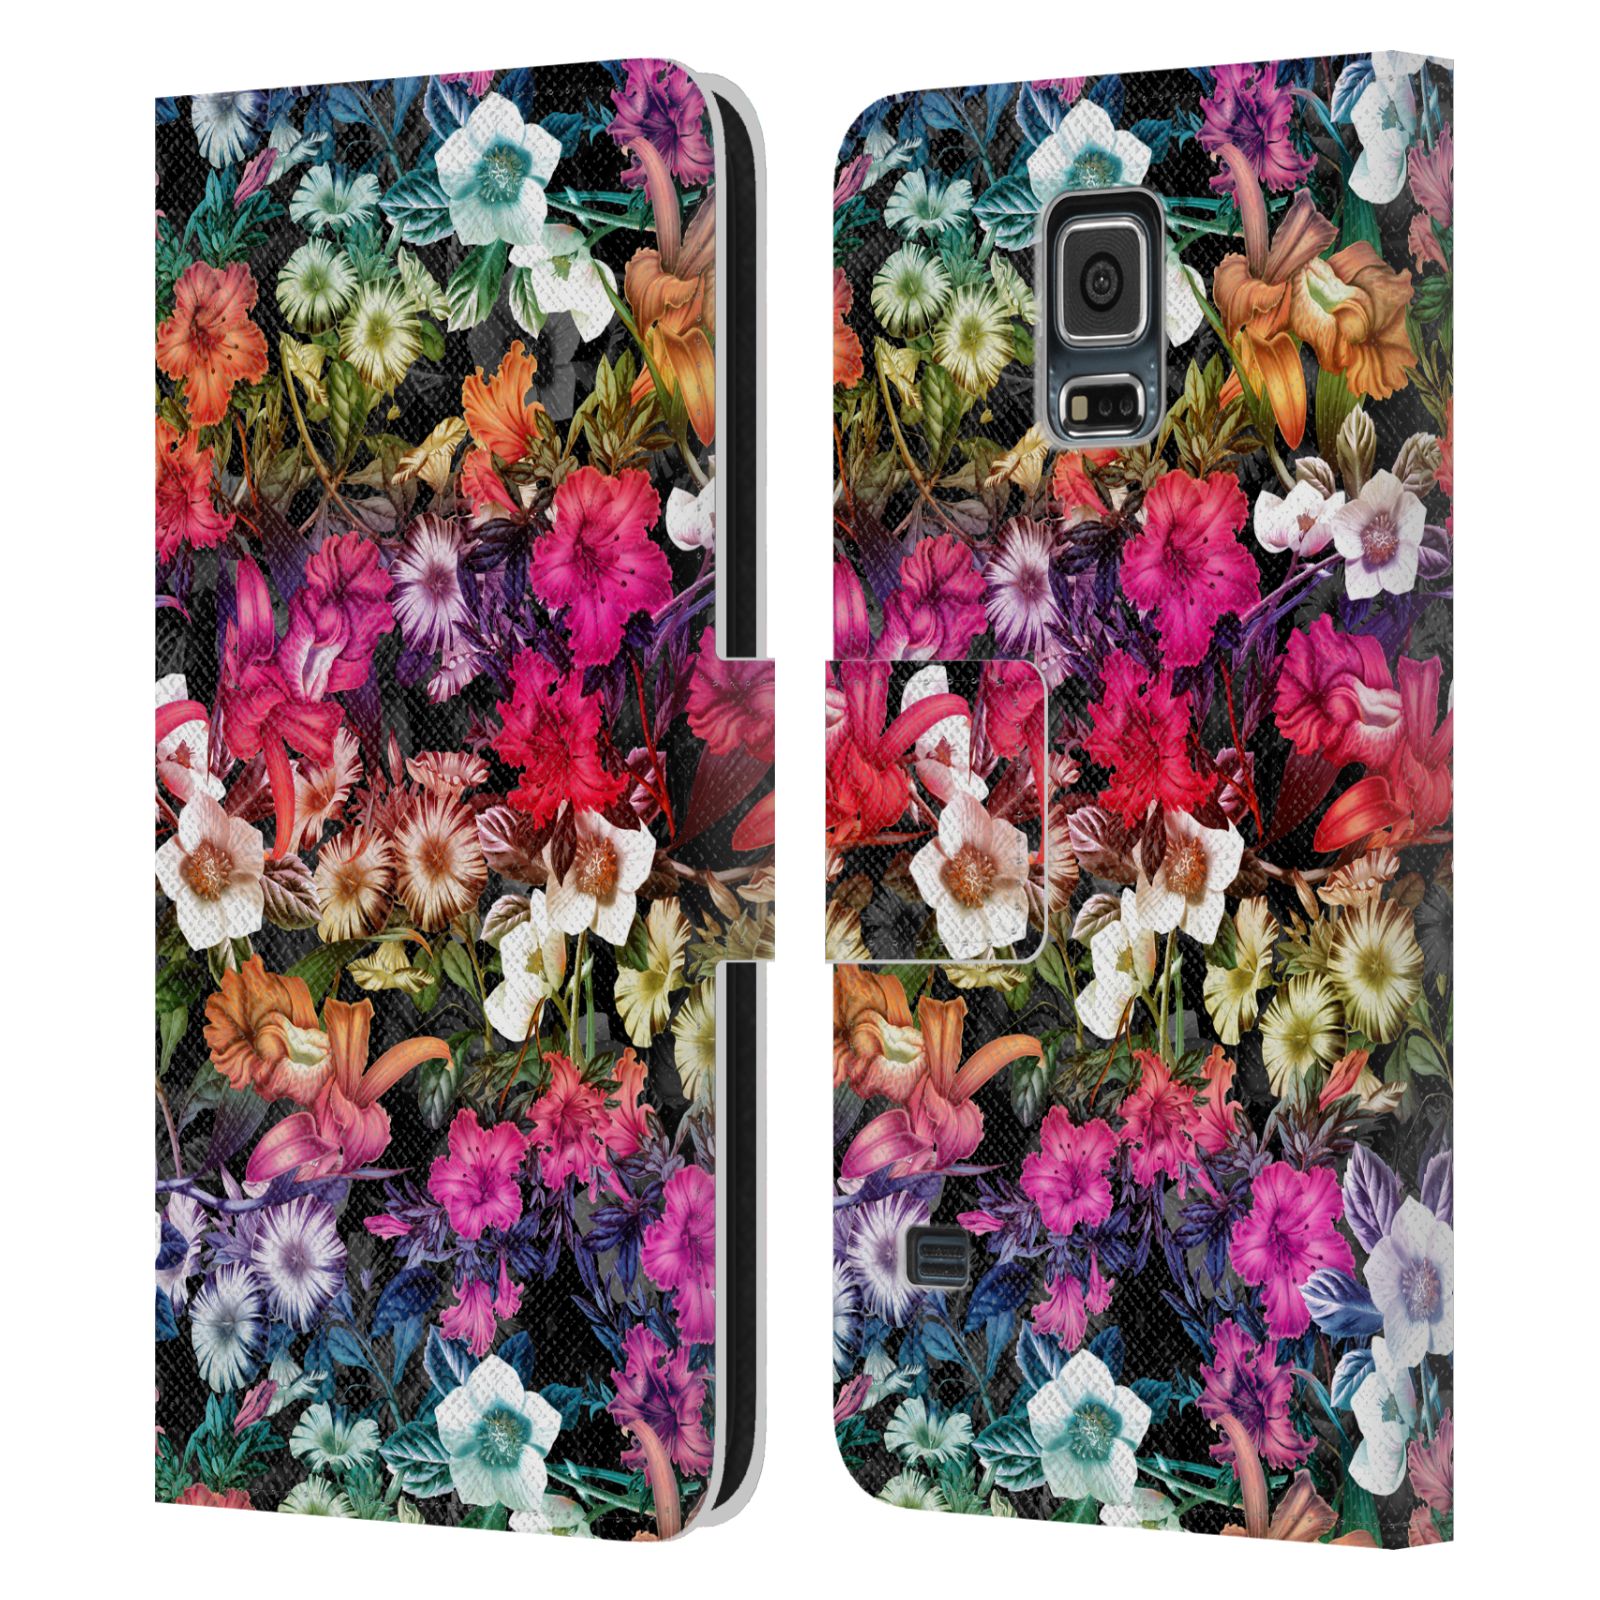 Pouzdro HEAD CASE pro mobil Samsung Galaxy S5  - Burcu - Květiny multikolor